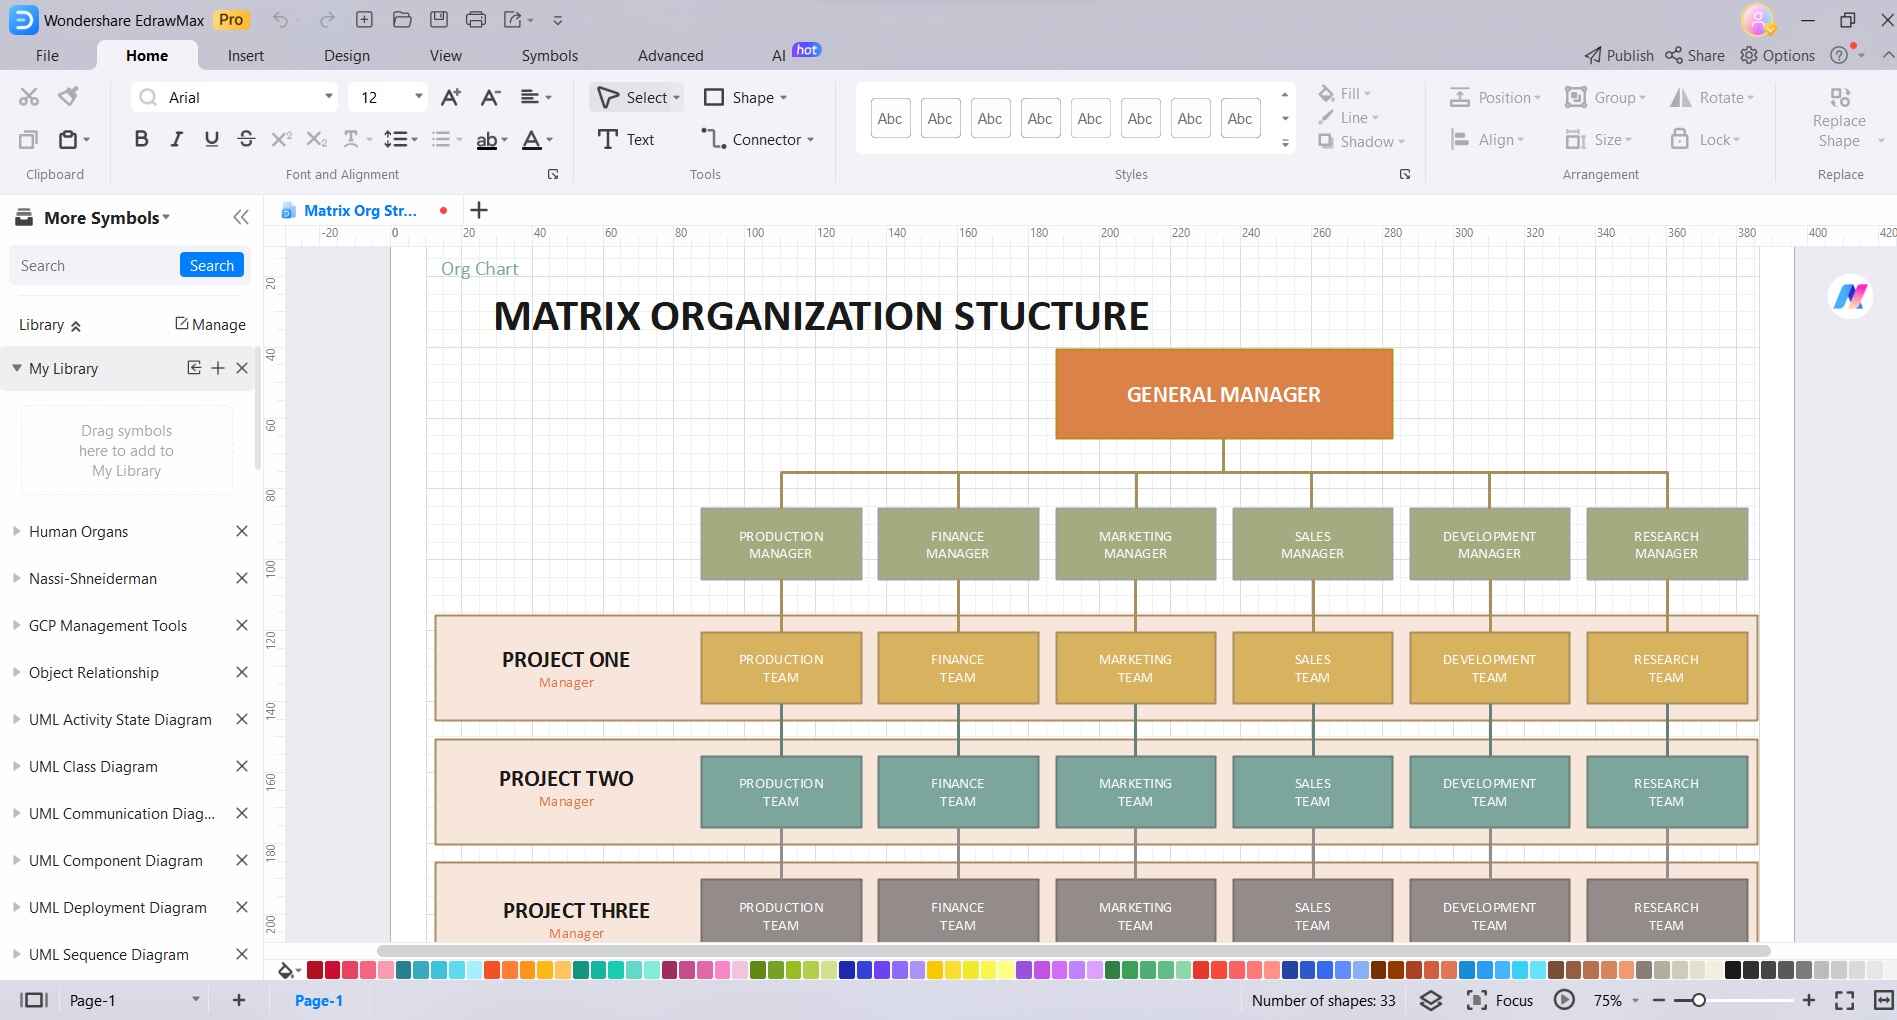 matrix organization structure chart in edrawmax